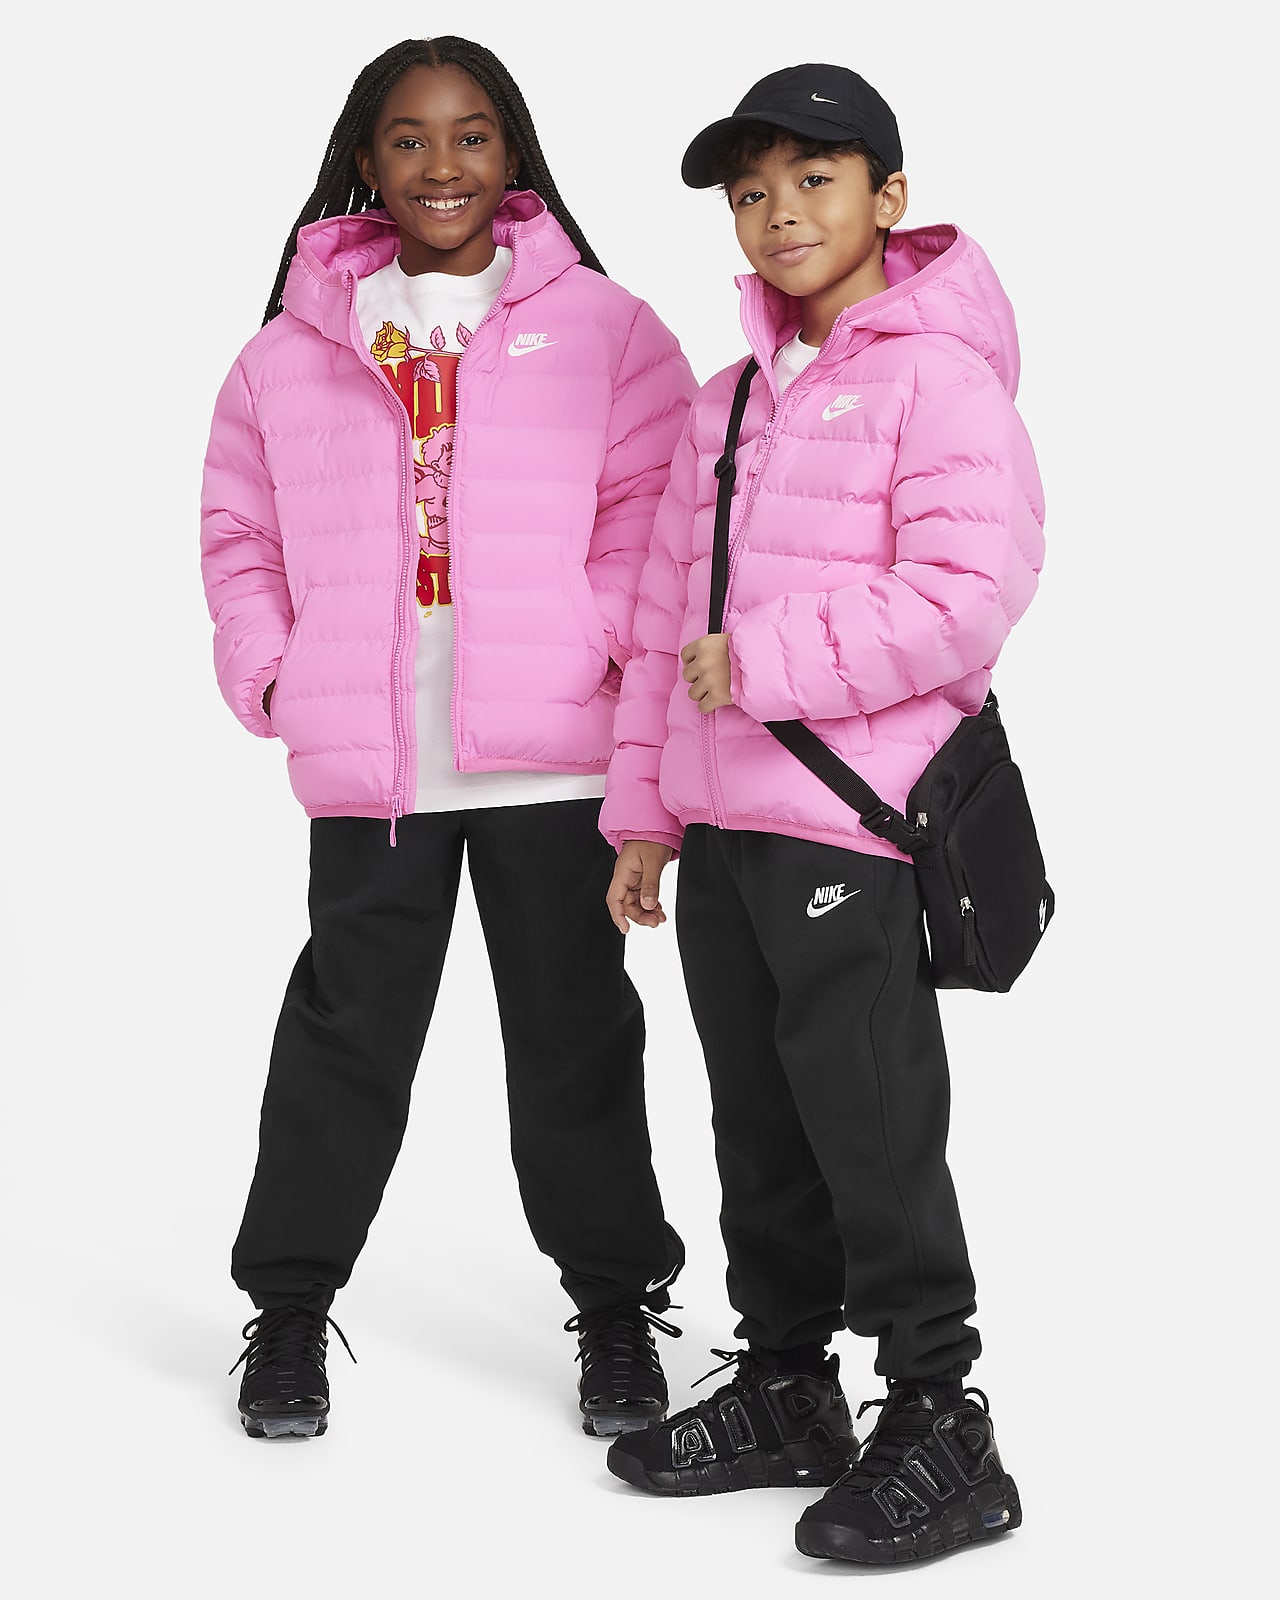 Big Fill Synthetic Loose Hooded Jacket. Lightweight Sportswear Nike Kids\'